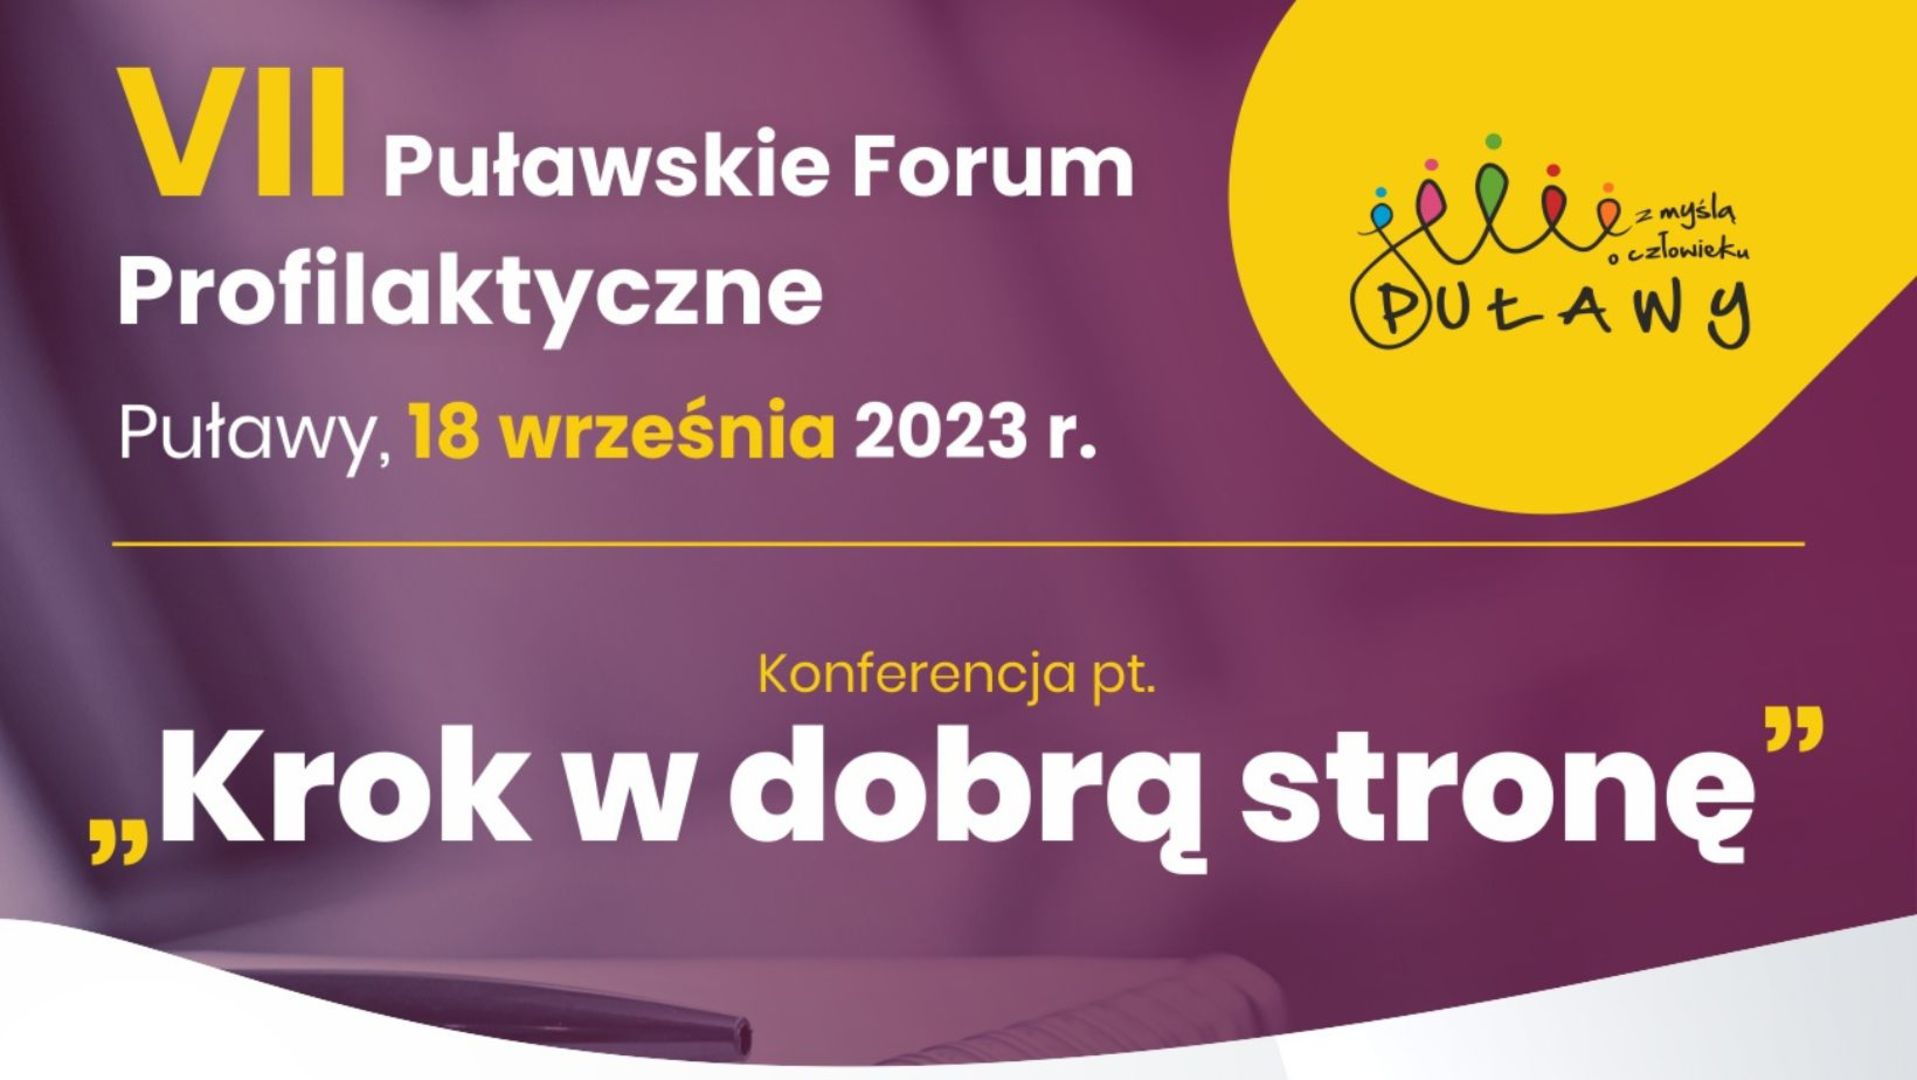 VII Puławskie Forum Profilaktyczne  
Konferencja pt. „Krok w dobrą stronę” 
Puławy, 18 września 2023 r.